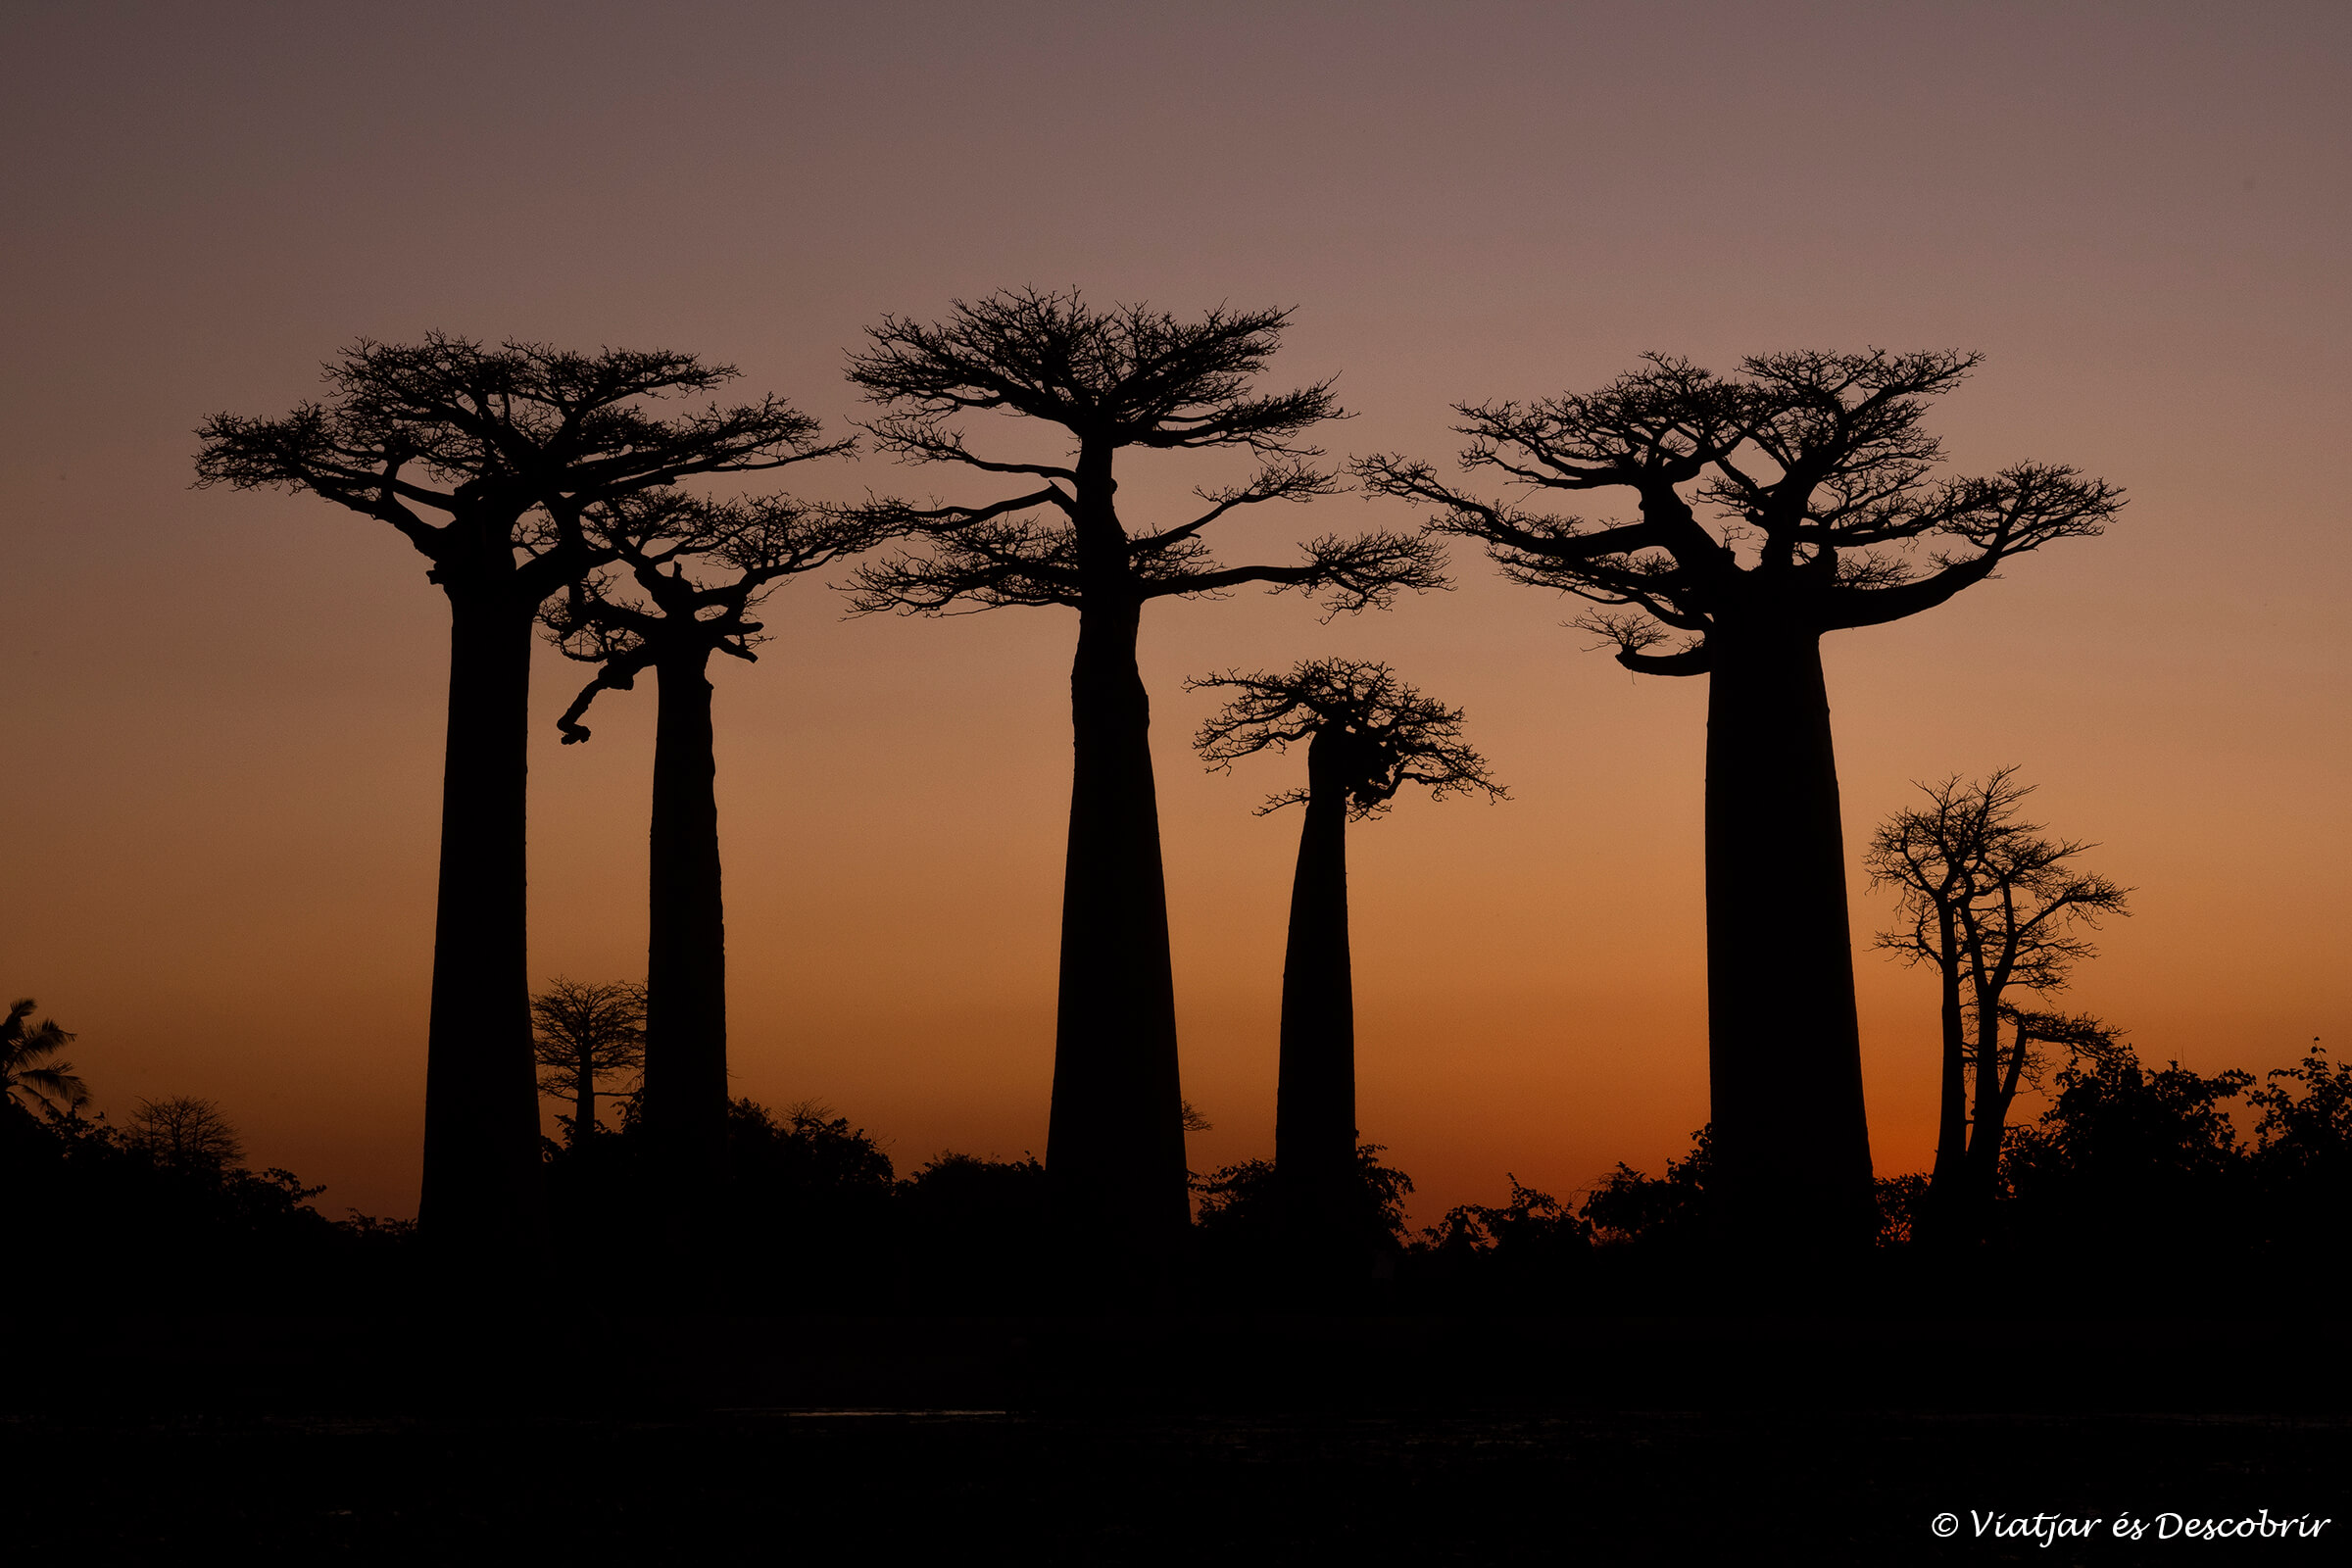 los baobabs durante la puesta de sol son la postal típica de un viaje a Madagascar